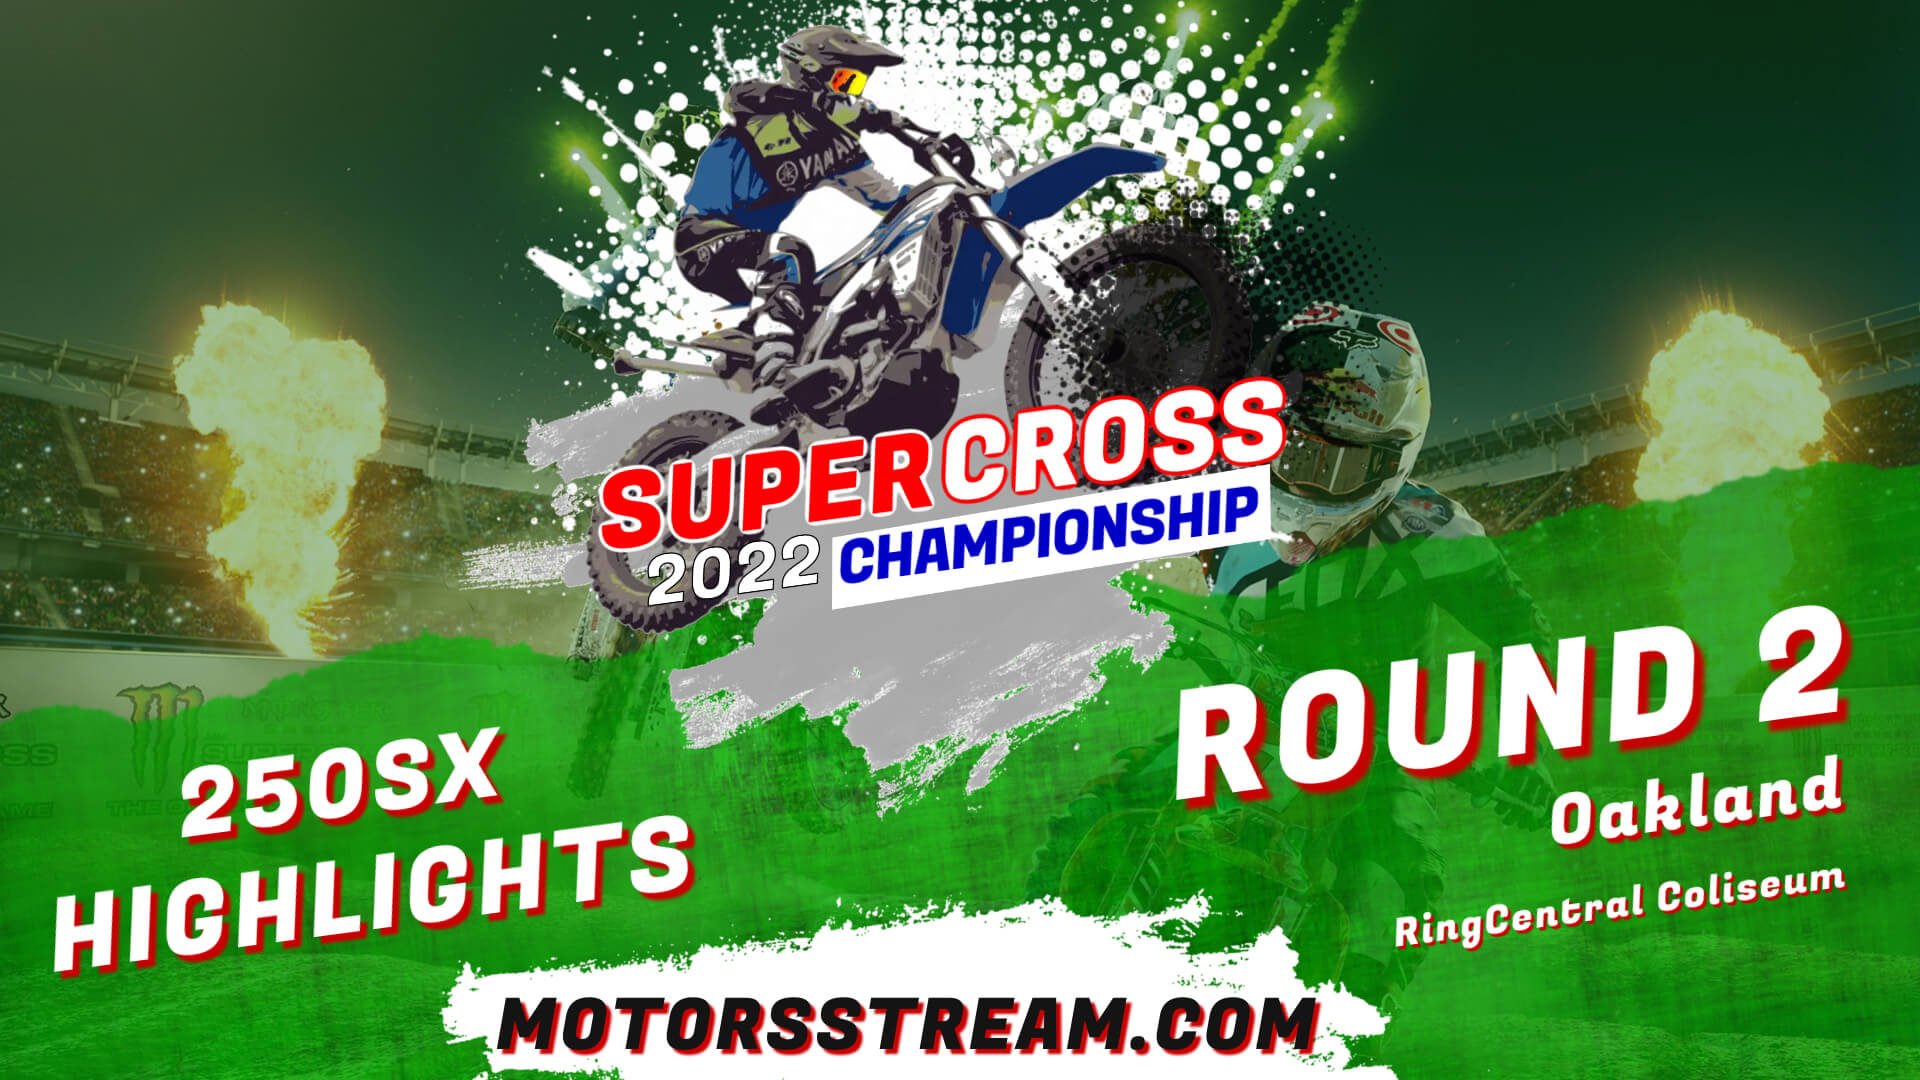 Supercross Round 2 Oakland 250SX Highlights 2022